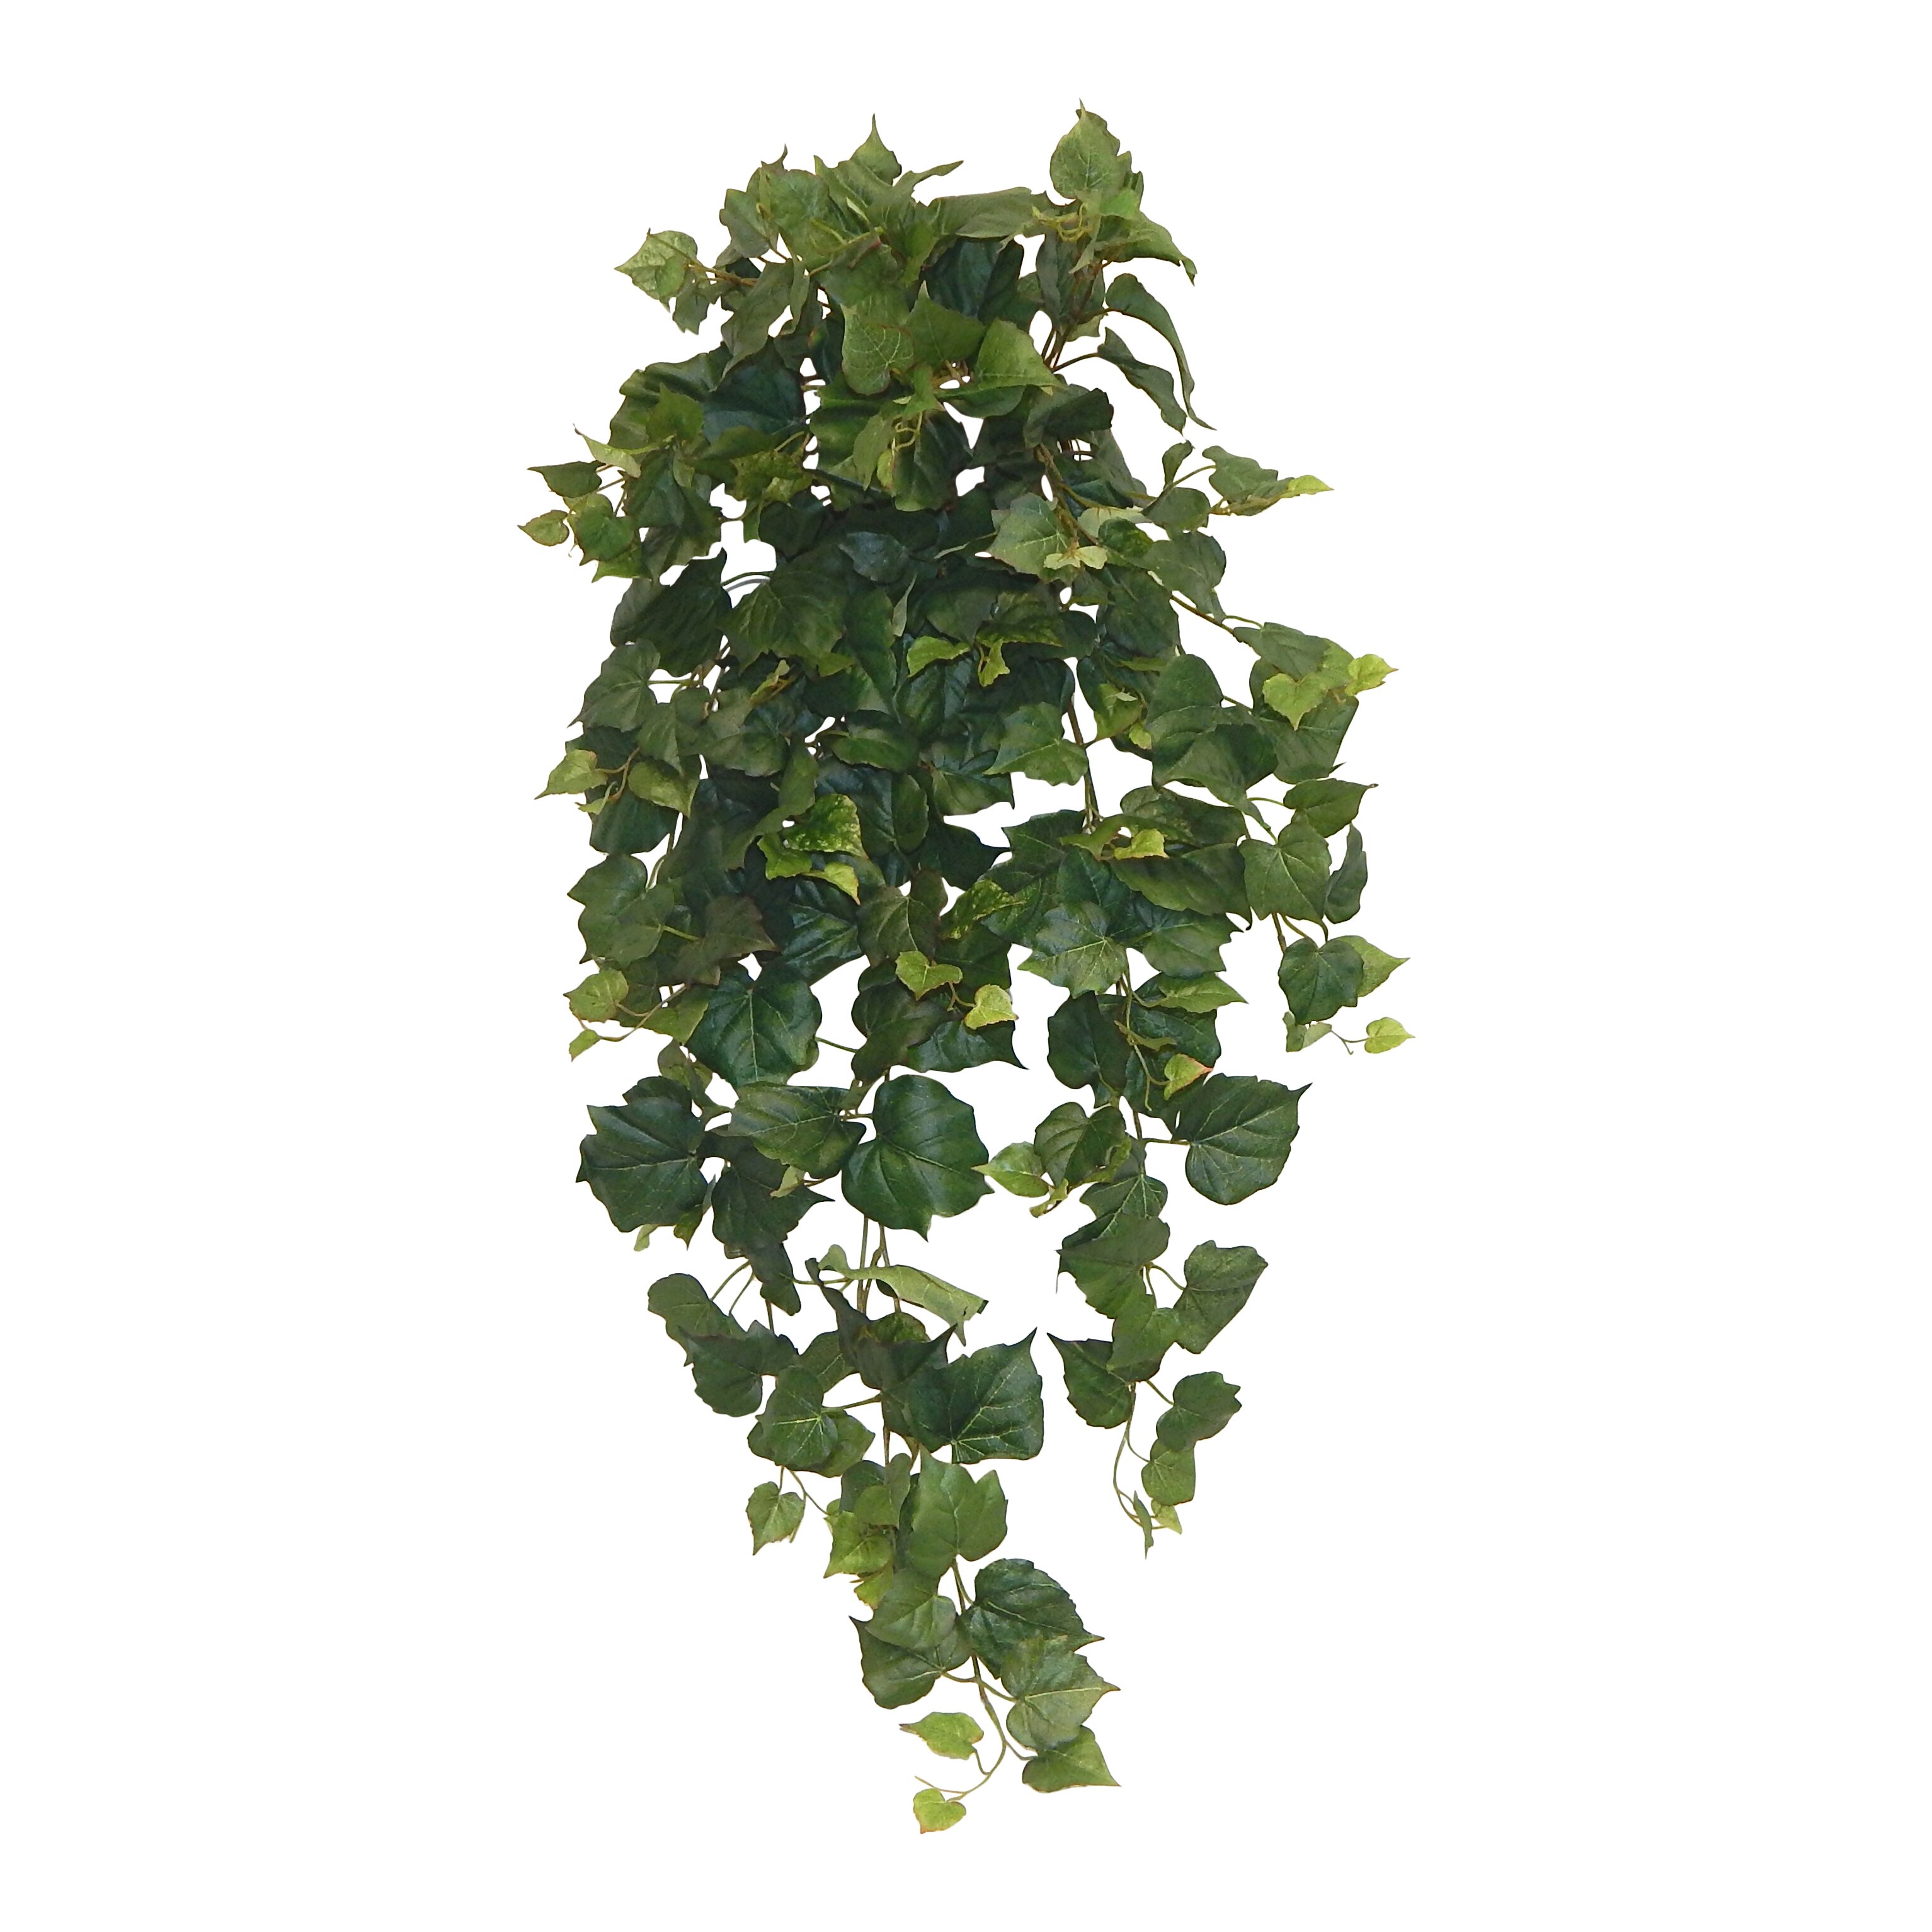 Hanging ivy plant information | cathyshepherdot